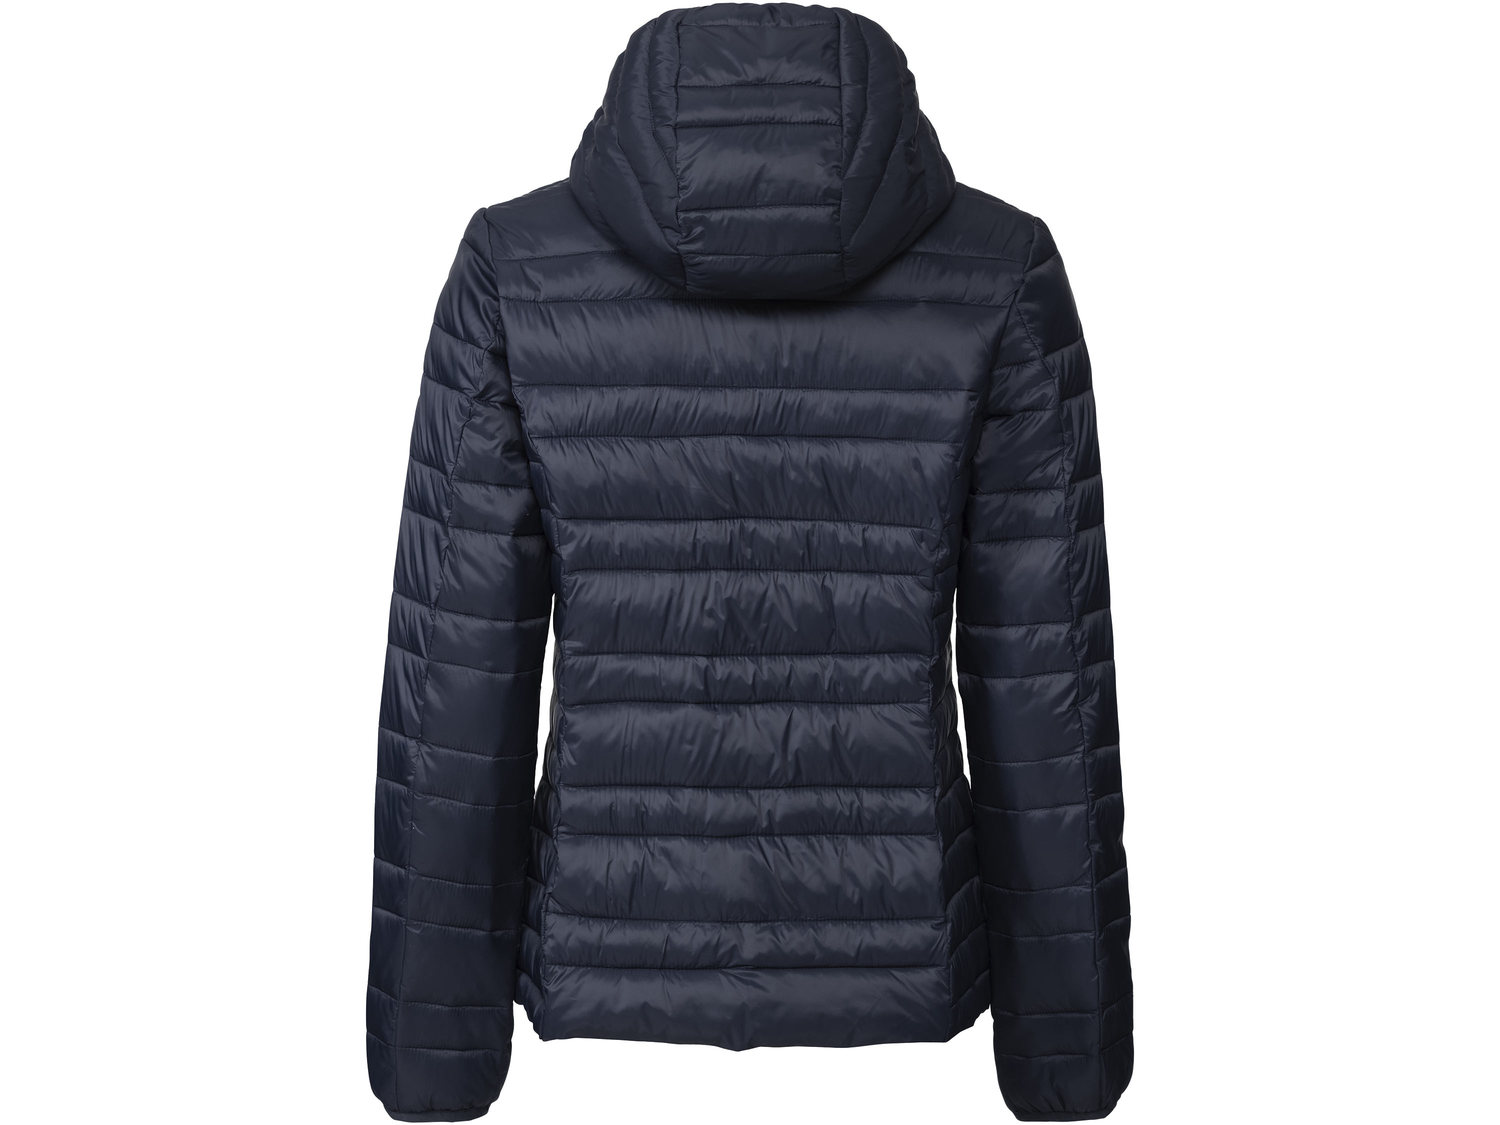 Pikowana kurtka termiczna Esmara, cena 69,00 PLN 
- rozmiary: 38-44 NASZE KURTKI
- ...